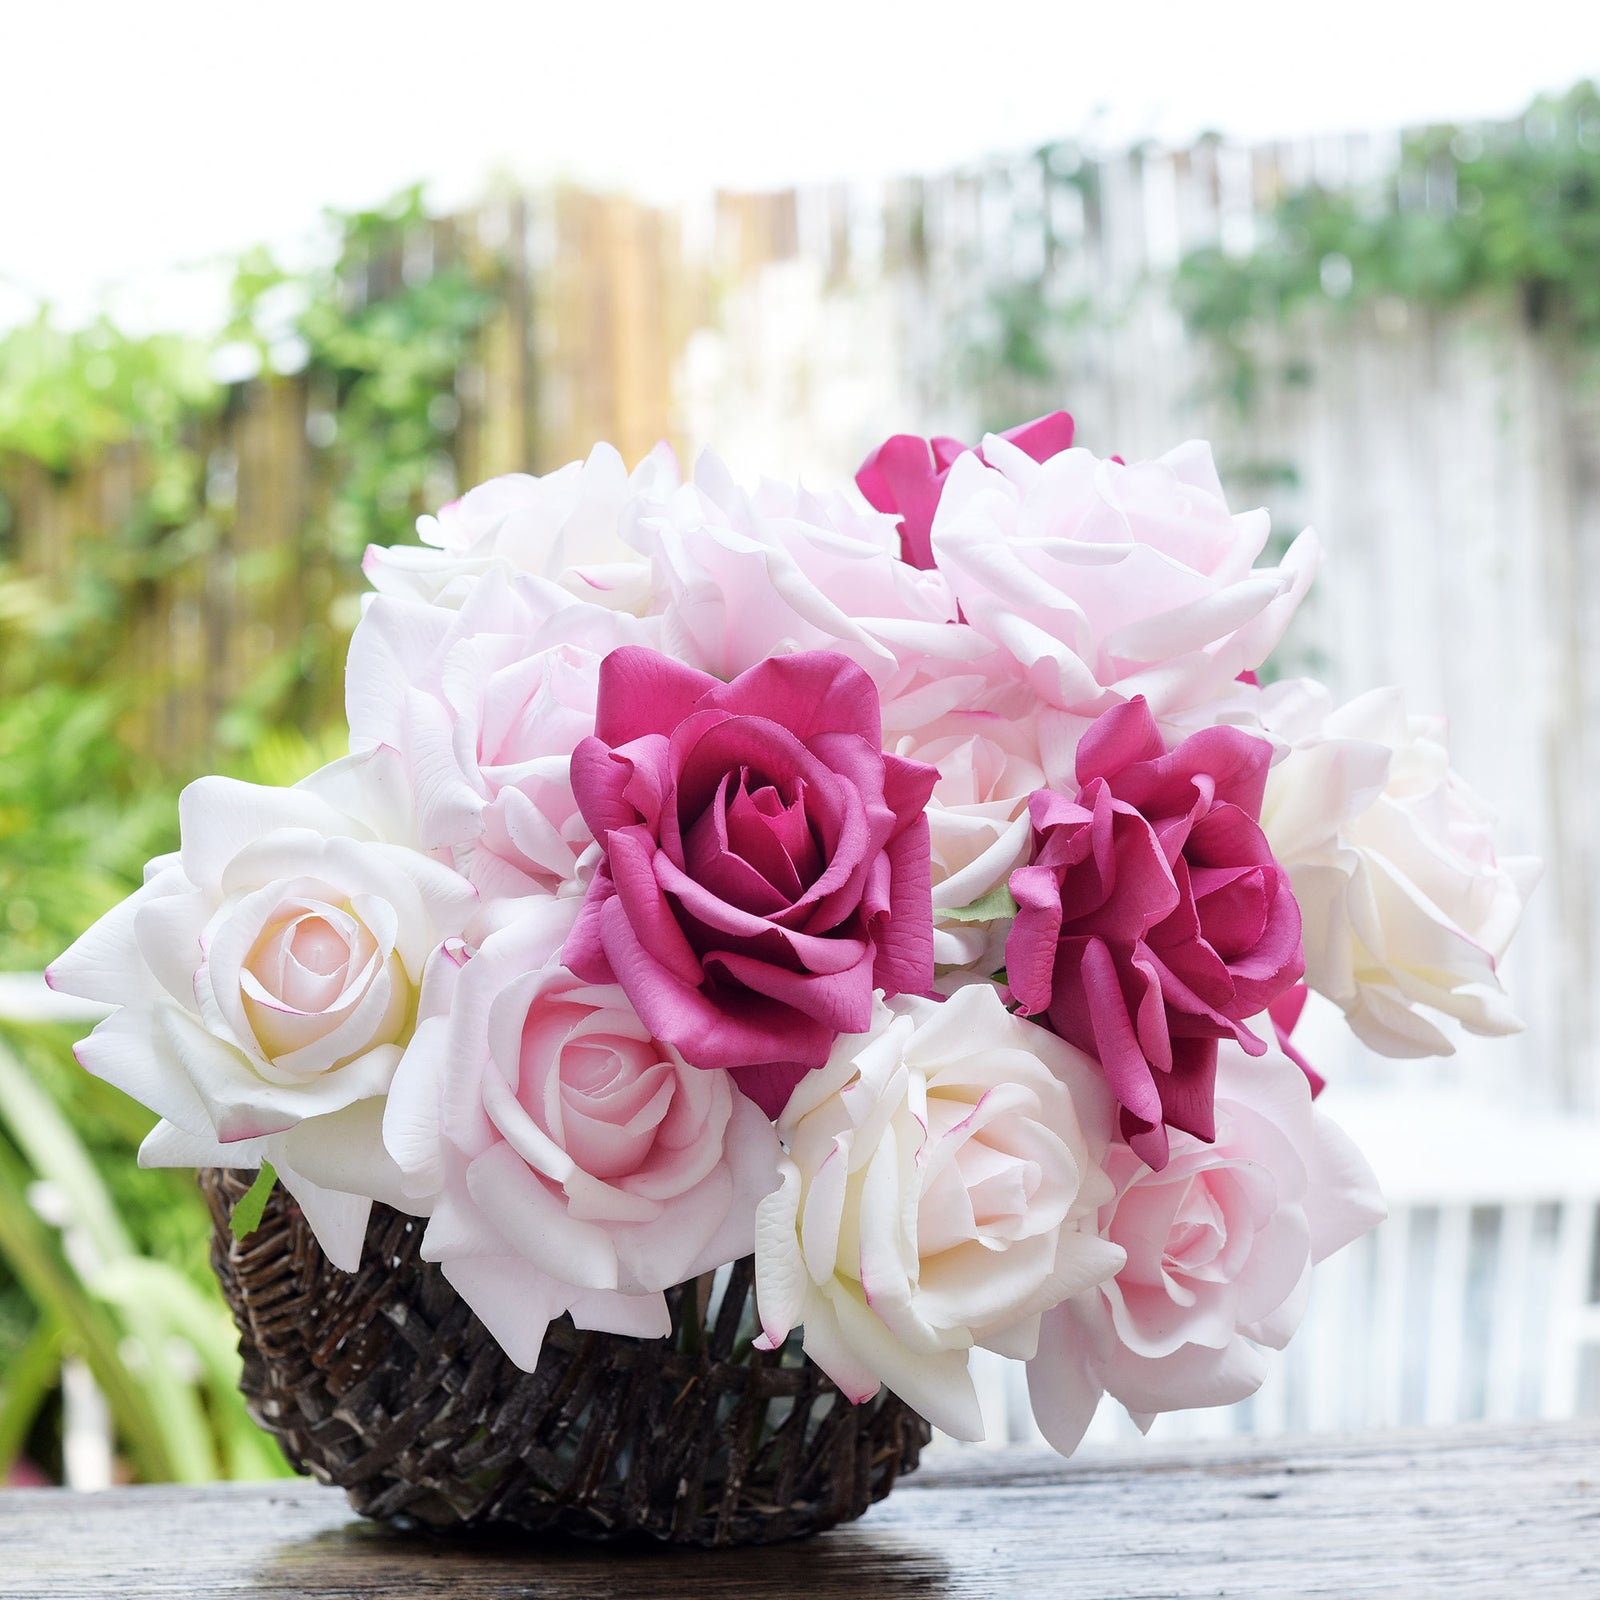 FiveSeasonStuff Light Pink Real Touch Garden Rose Artificial Flowers Wedding, Bridal, Home Décor 5 Stems 9.8"